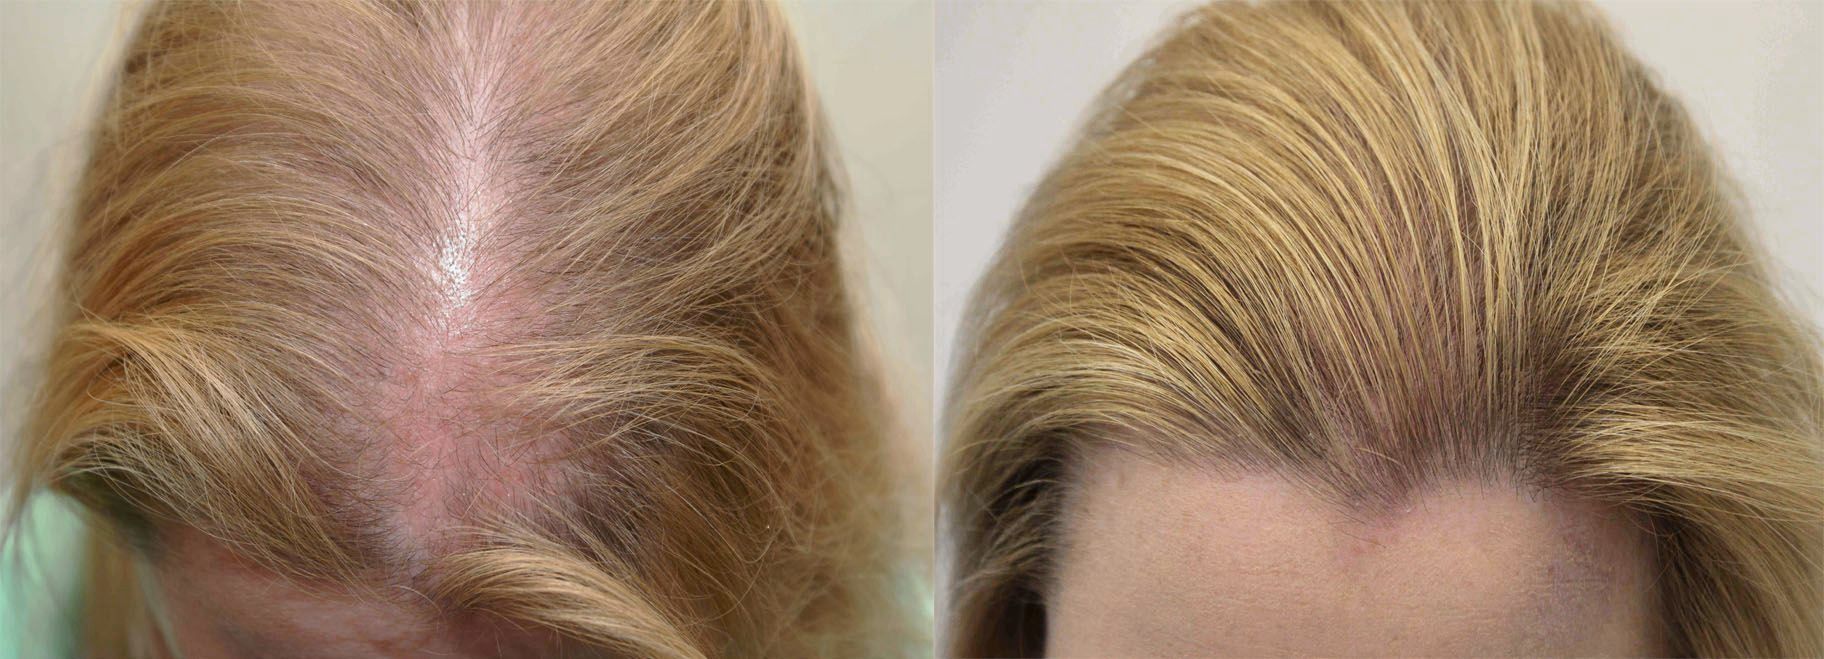 Выпали волосы после осветления. Мезотерапия волос до и после.